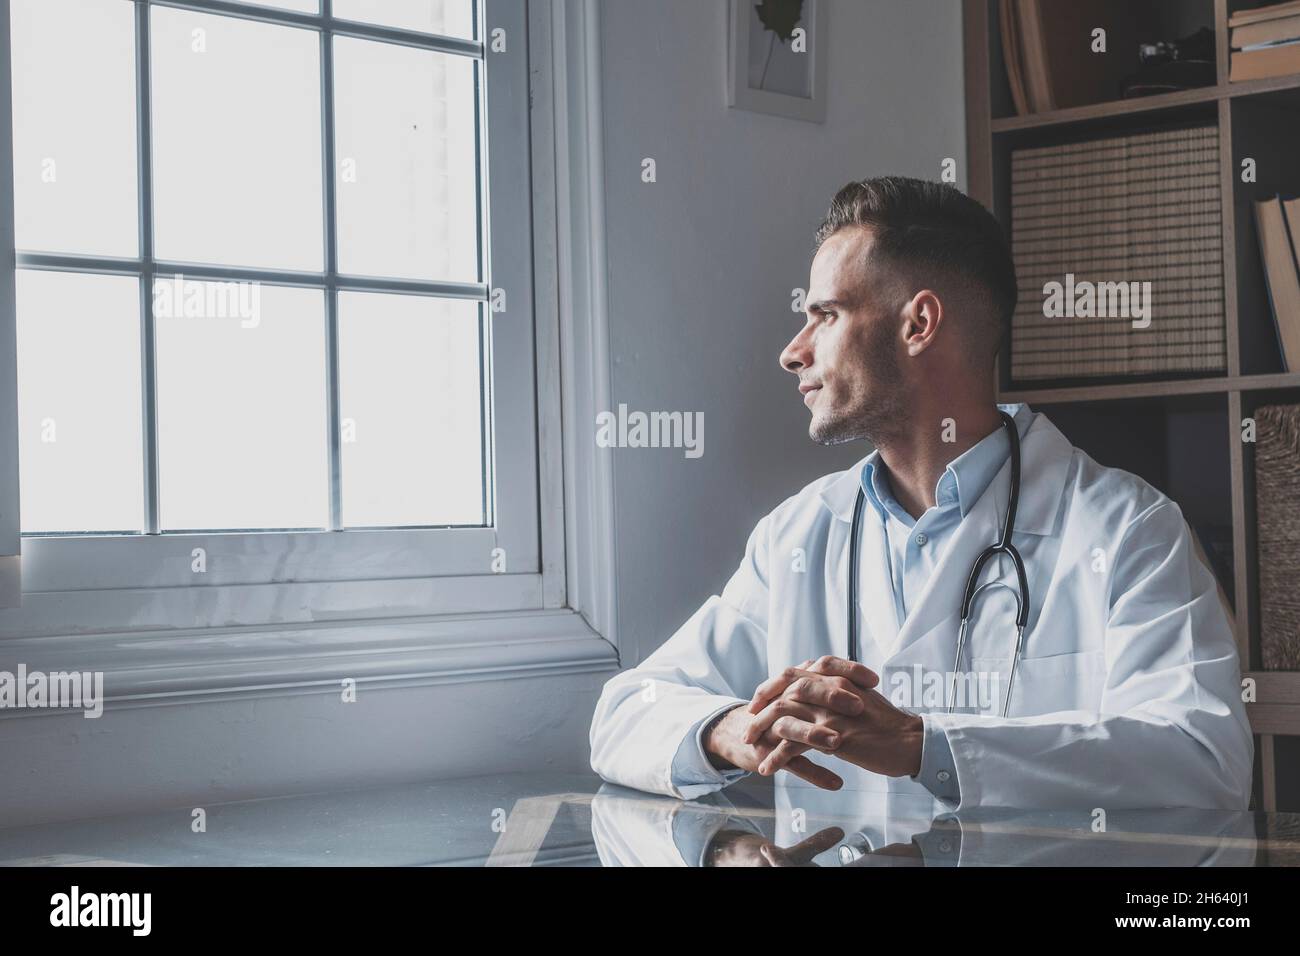 Nachdenklicher junger männlicher kaukasischer Arzt in weißer medizinischer Uniform Blick im Fenster Abstand denken oder grübeln, ernster Mann gp planen zukünftige Karriere oder Erfolg in der Medizin, visualisieren am Arbeitsplatz schriftlich Stockfoto